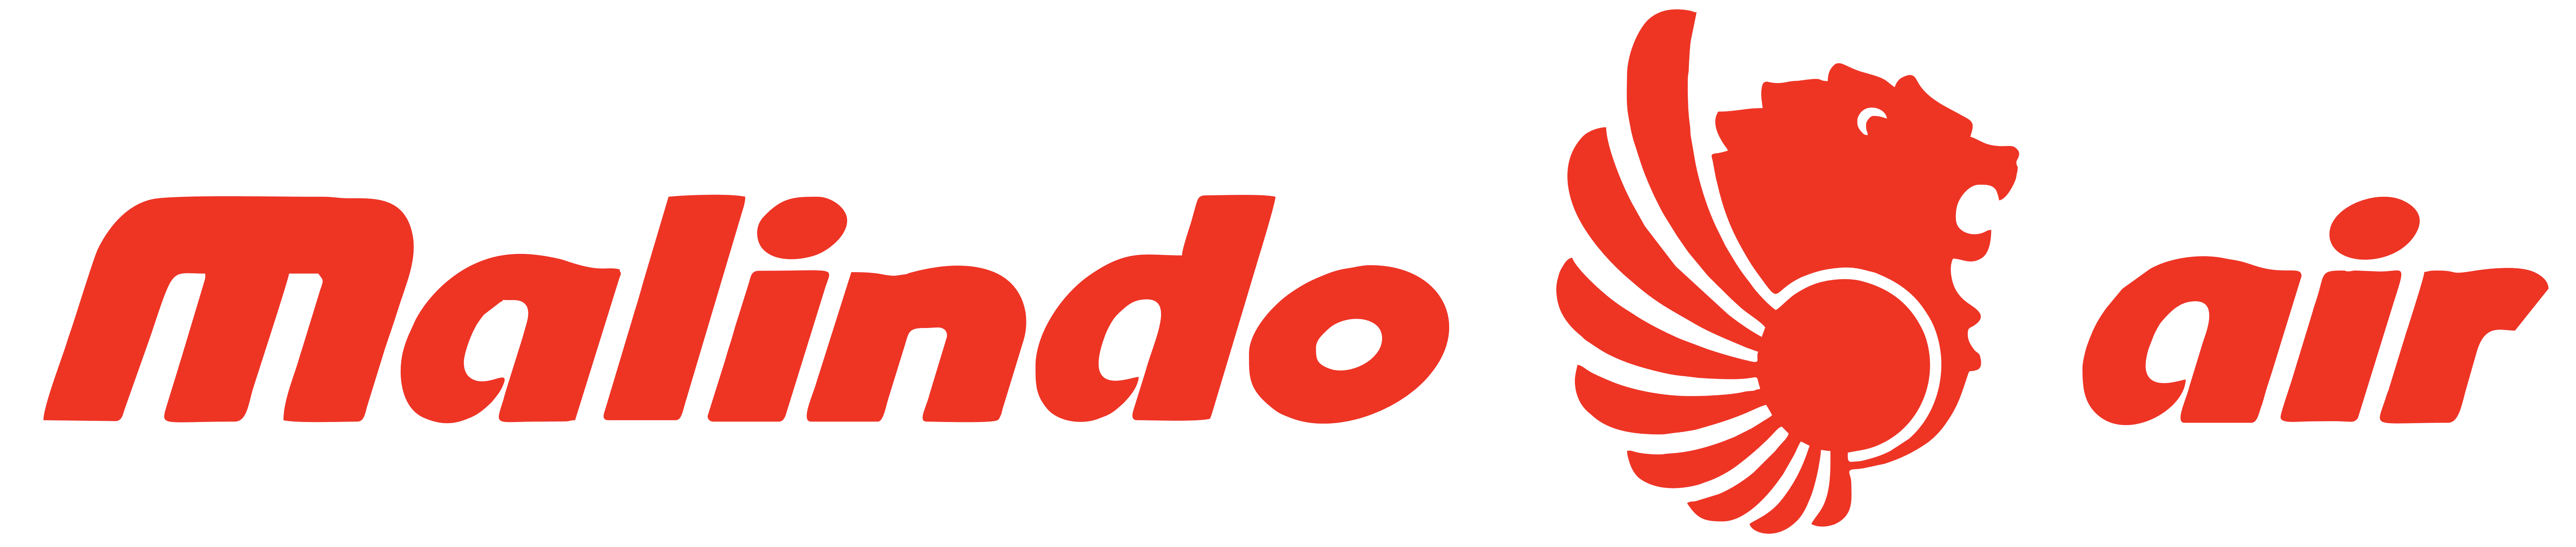 Malindo Air Logo PNG - 115281